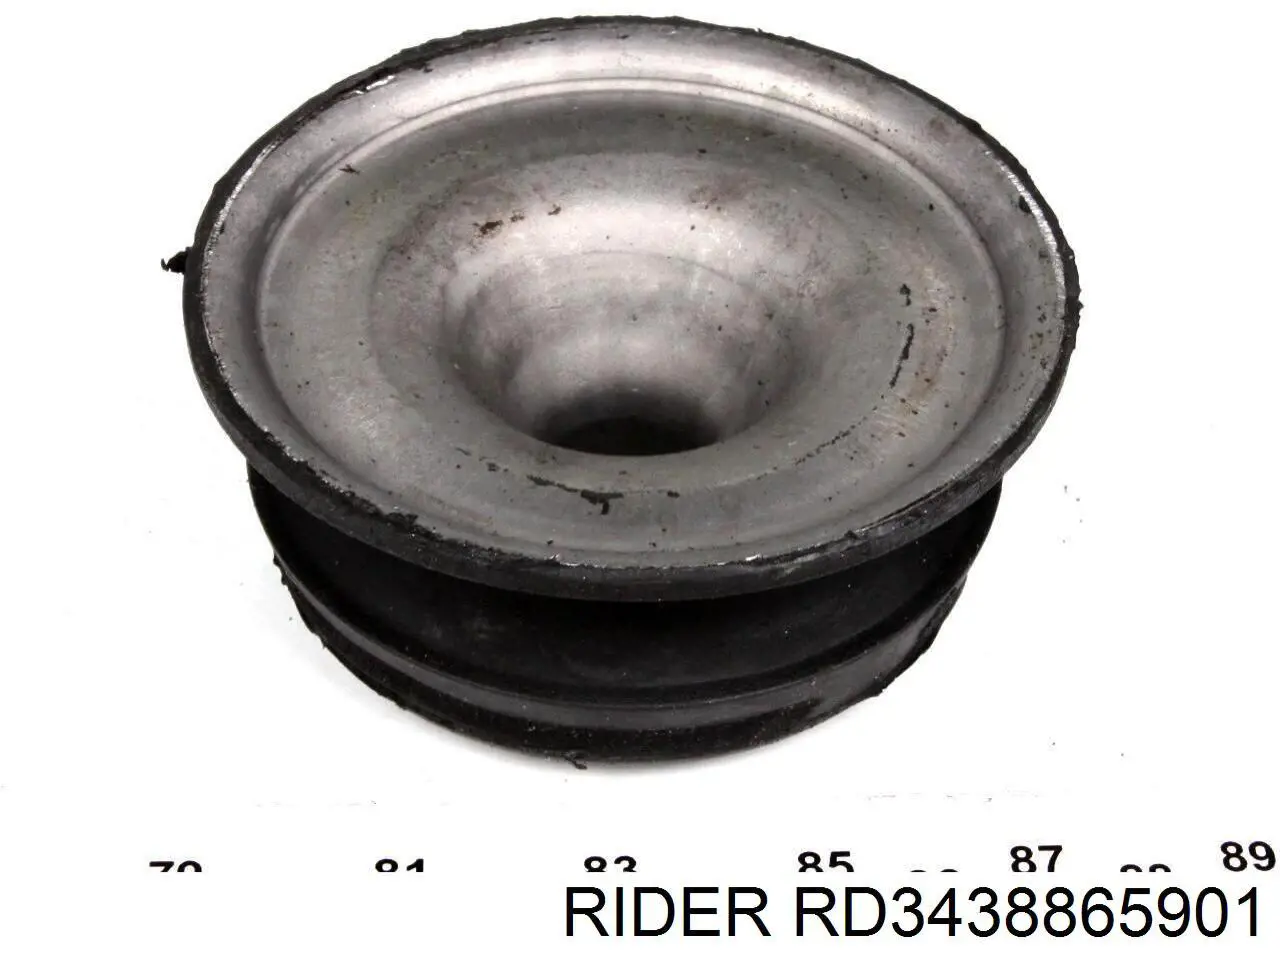 RD3438865901 Rider rodamiento amortiguador delantero